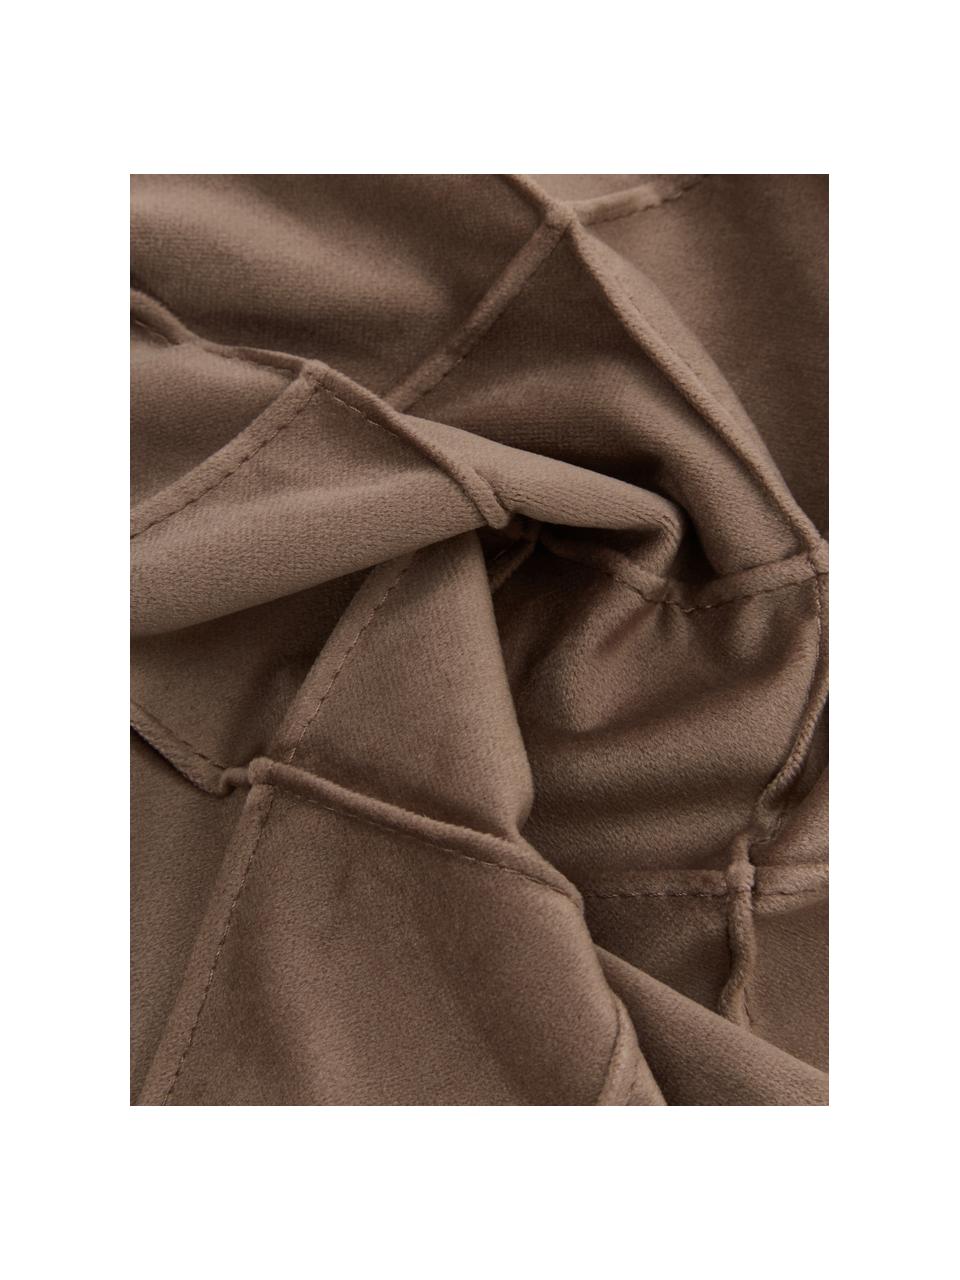 Fluwelen kussenhoes Luka in bruin met structuur-ruitpatroon, Fluweel (100% polyester), Bruin, B 30 x L 50 cm